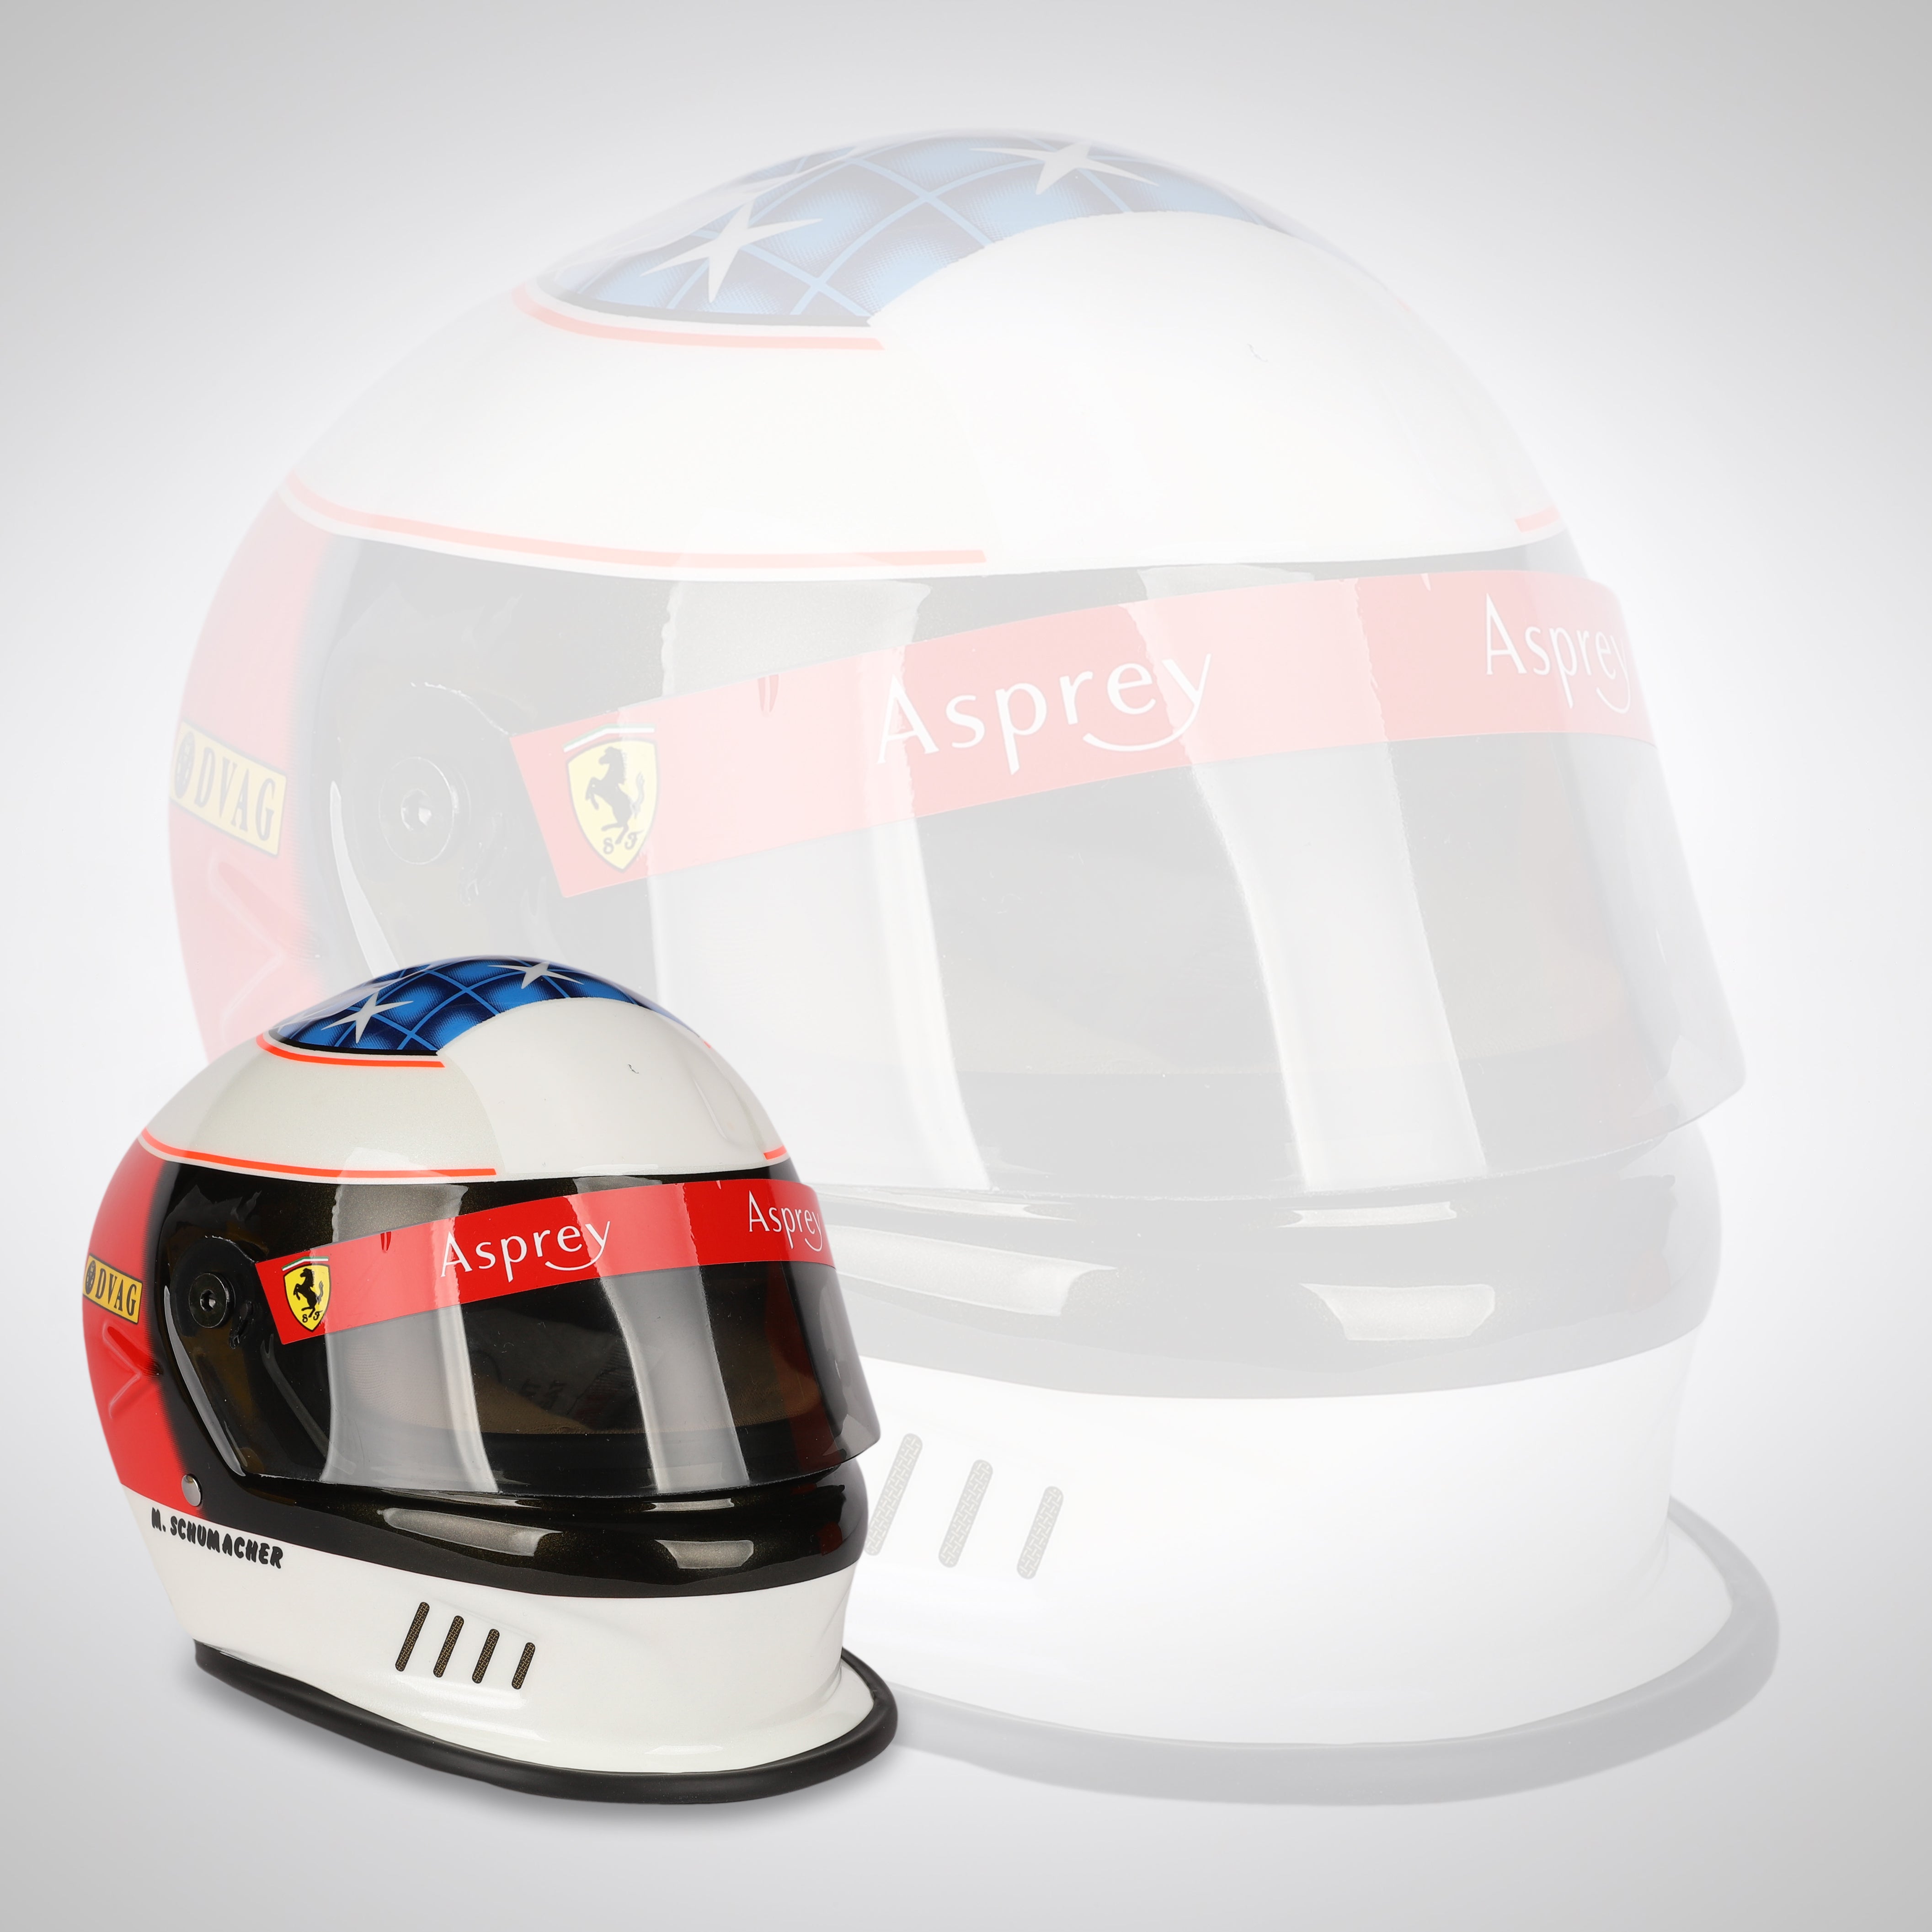 Michael Schumacher 1996 1:2 Scale Helmet